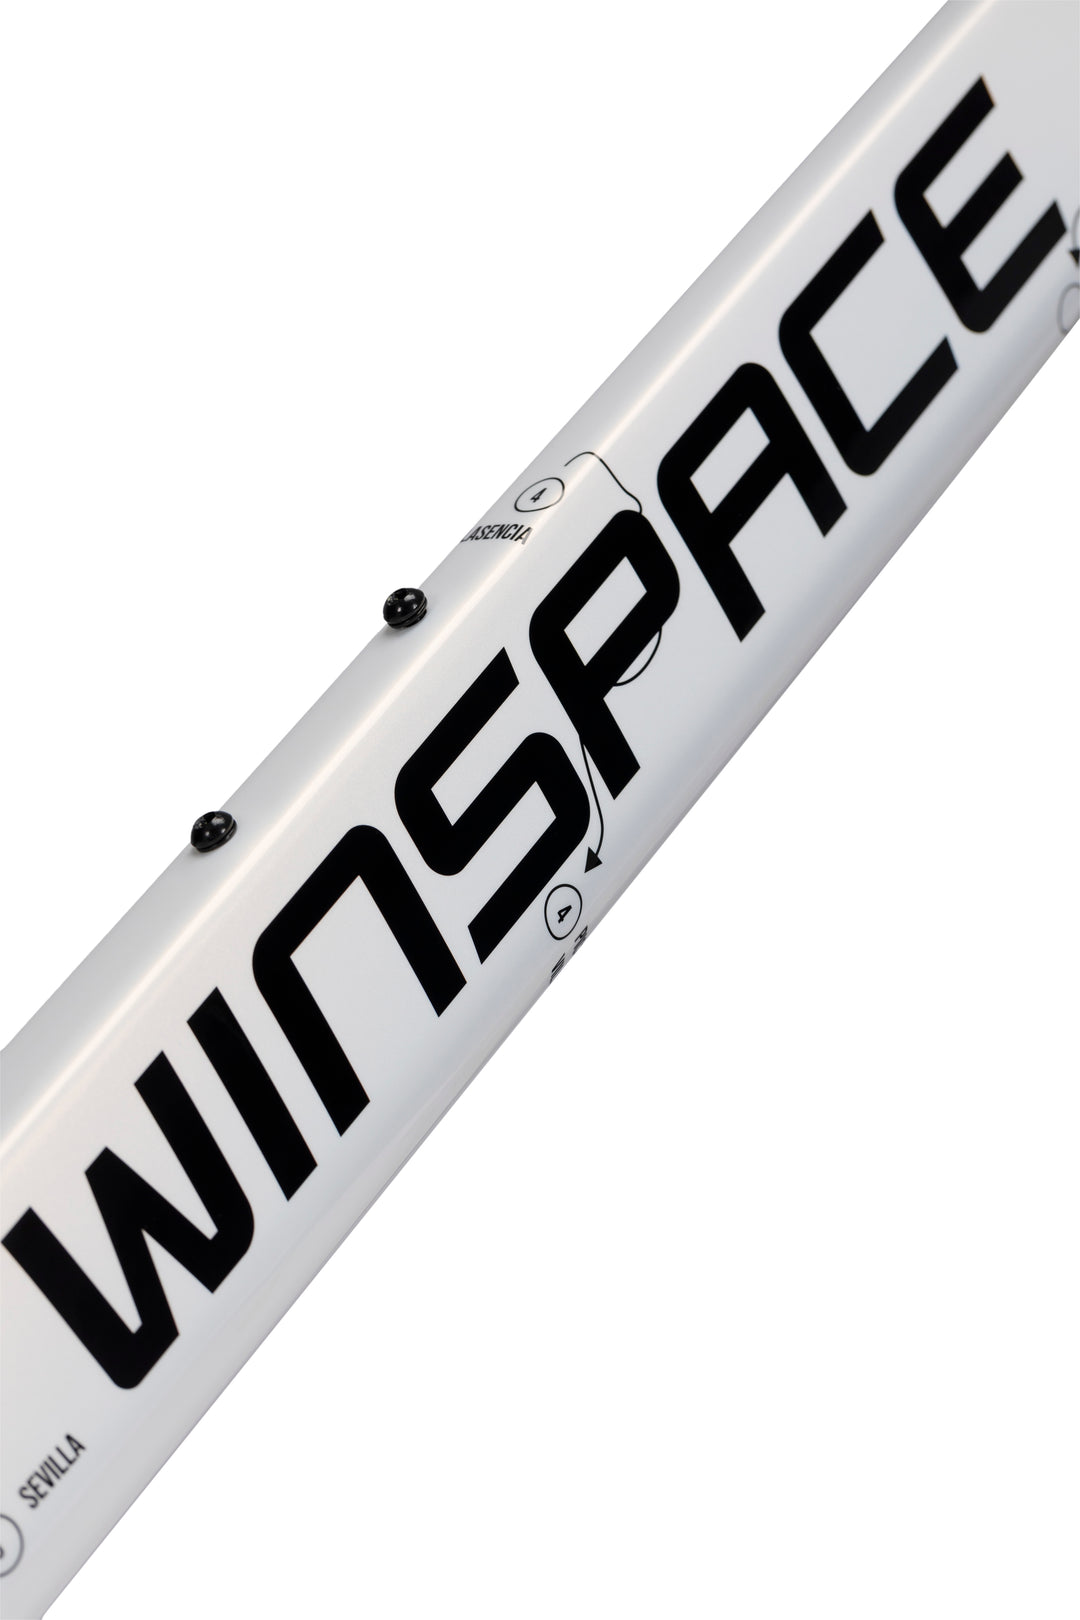 WINSPACE T1550 2nd Gen